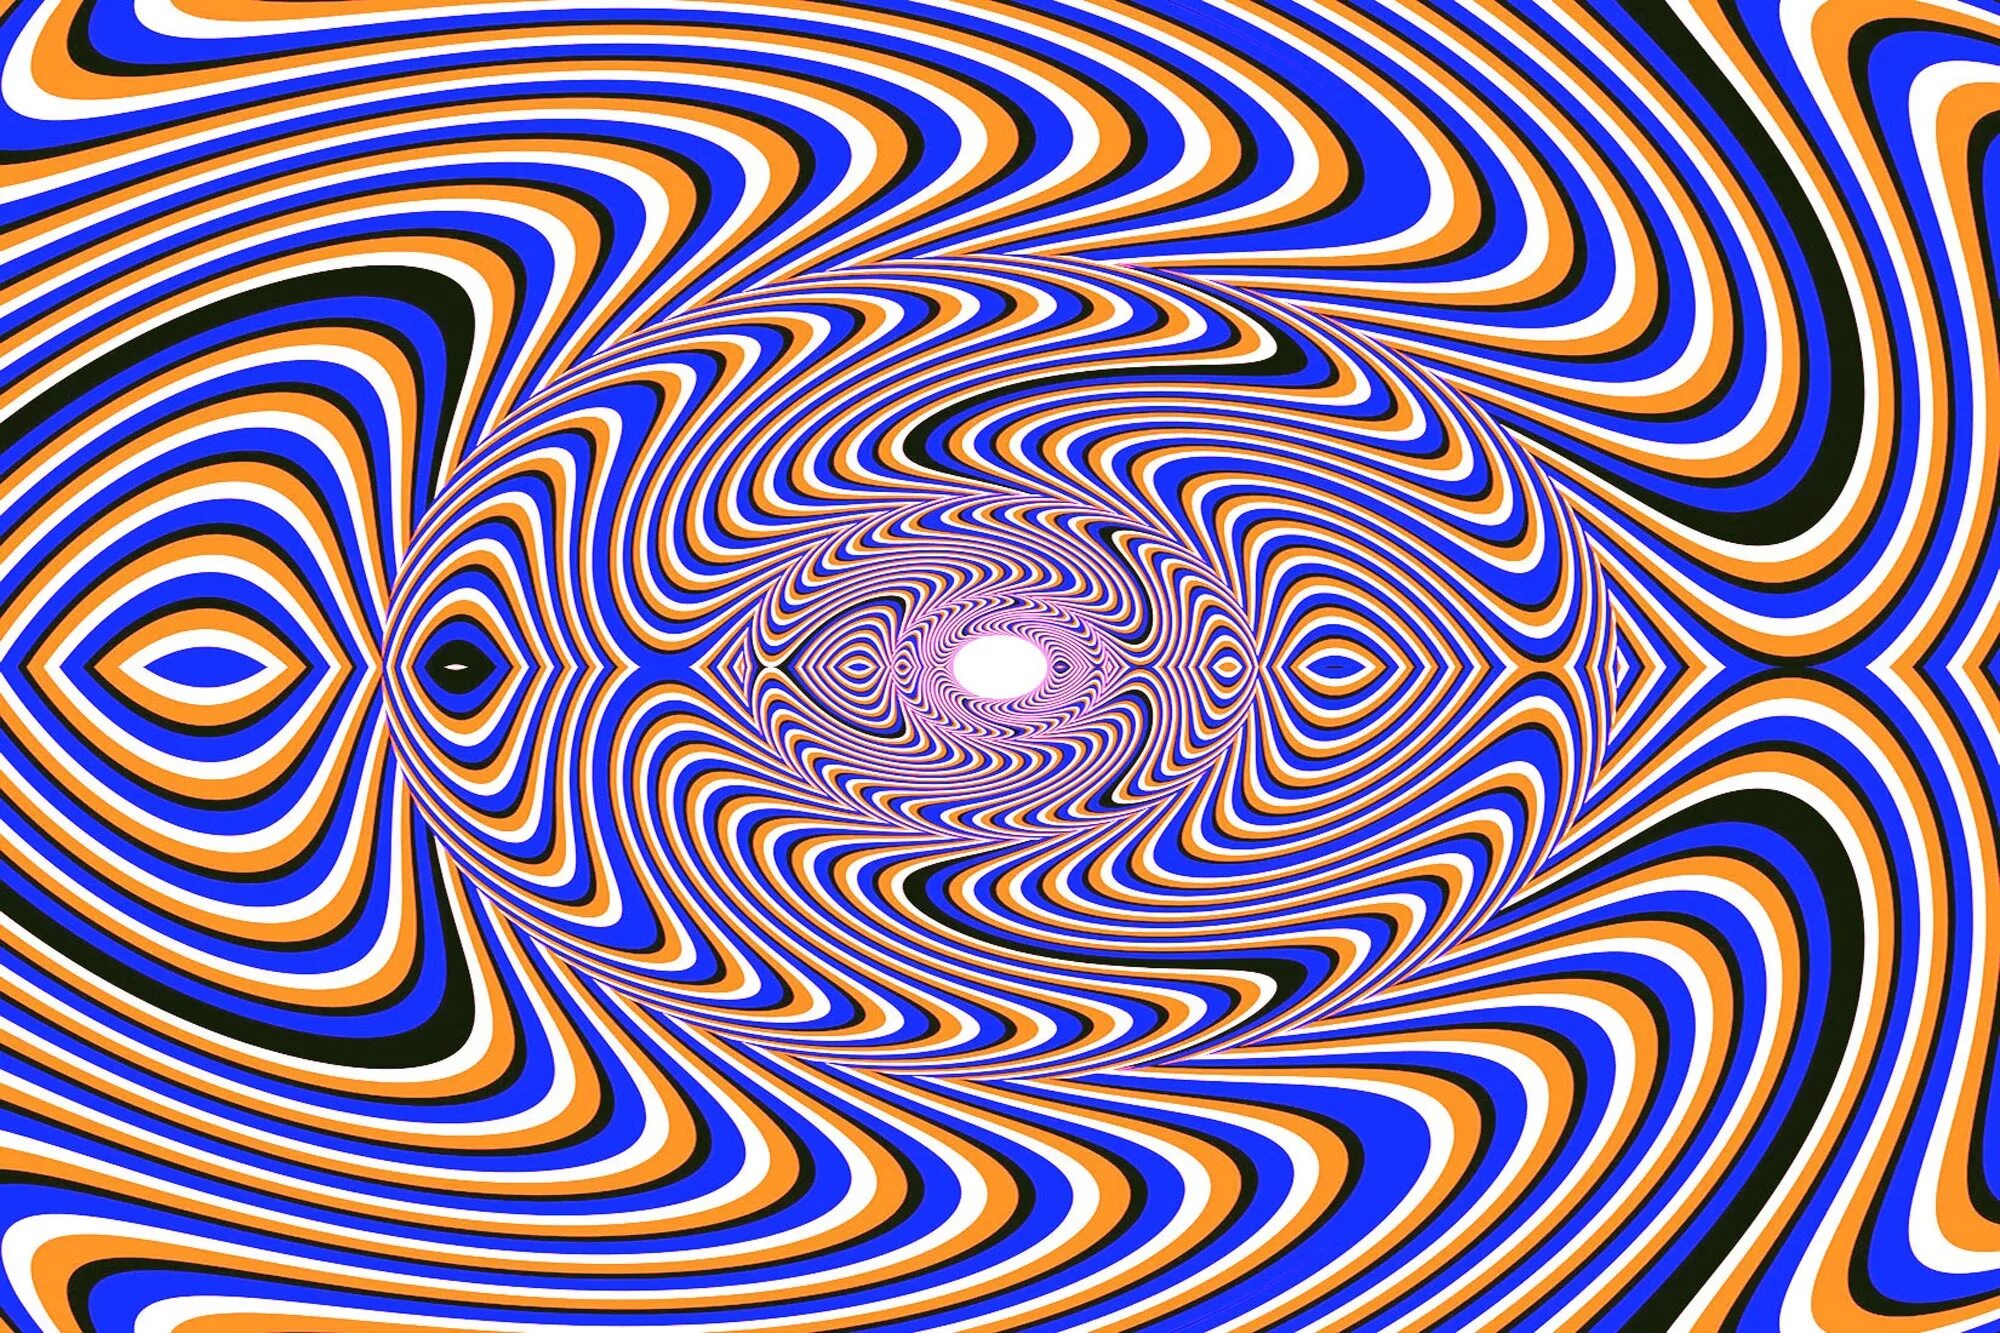 Двигаться б. Оптикал Иллюжн. «Оптические иллюзии» (Автор Джейкобс ПЭТ). Зрительные иллюзии. Визуальные иллюзии.